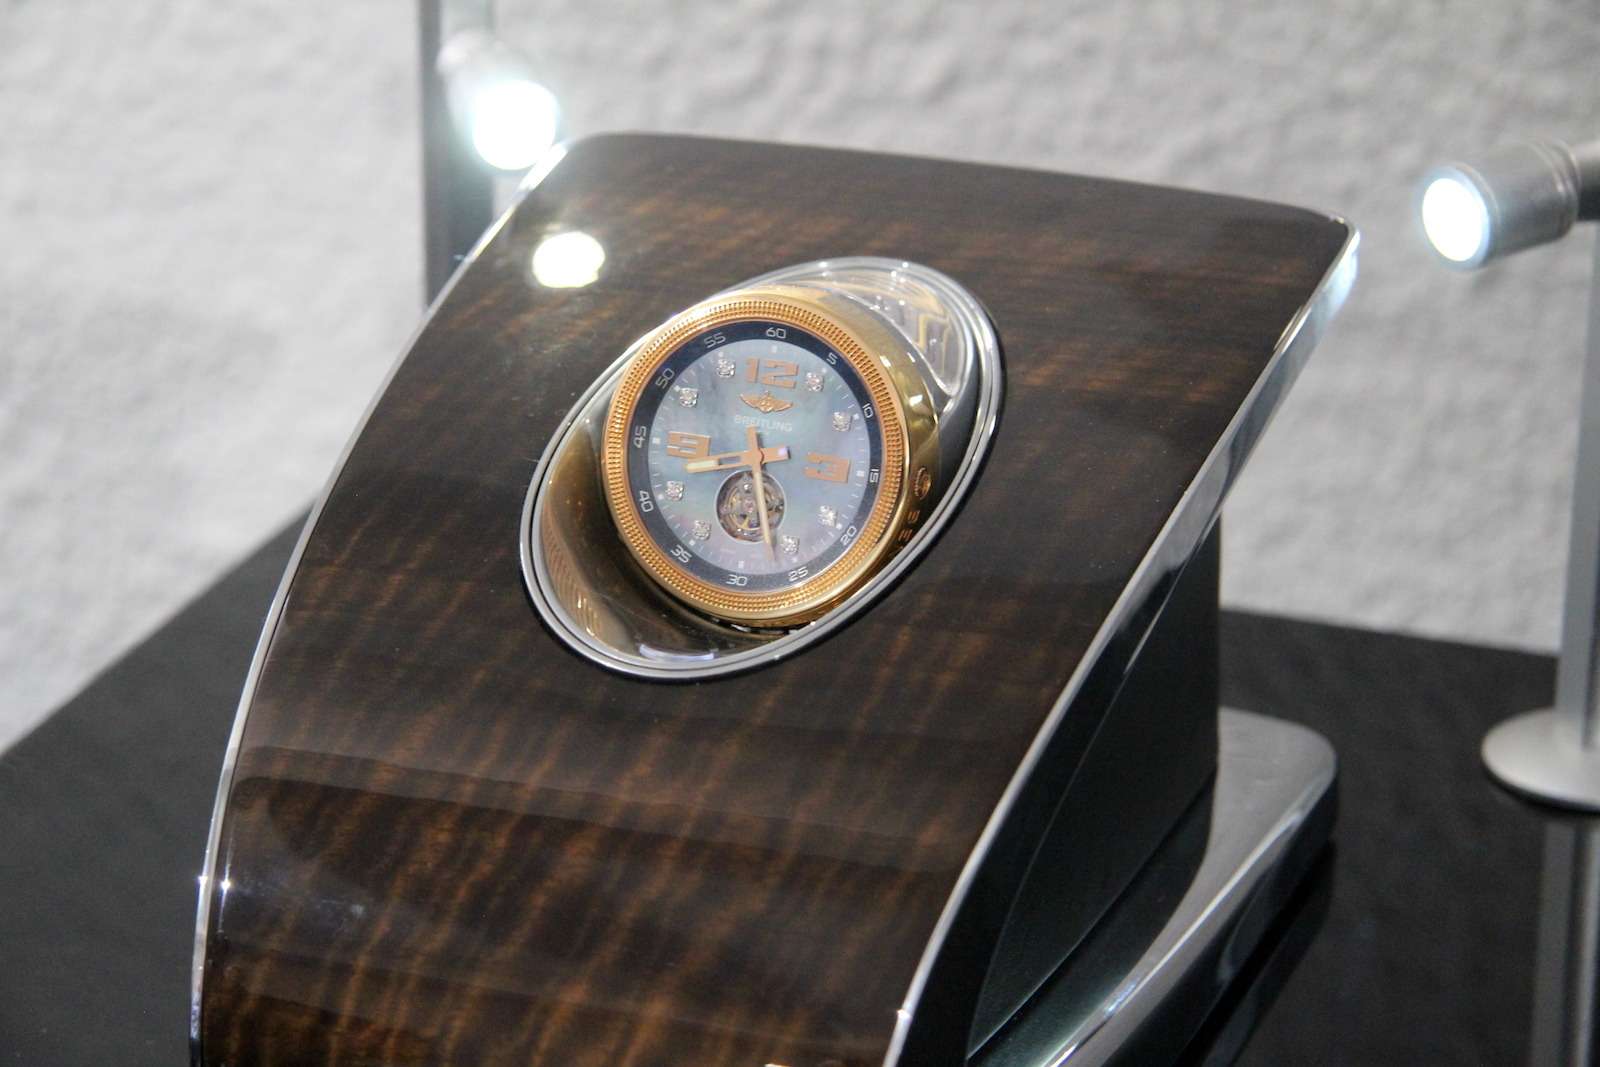 Опция в виде хронографа Mulliner Tourbillon от Breitling для нового Bentayga обойдется в 150 тыс. евро!